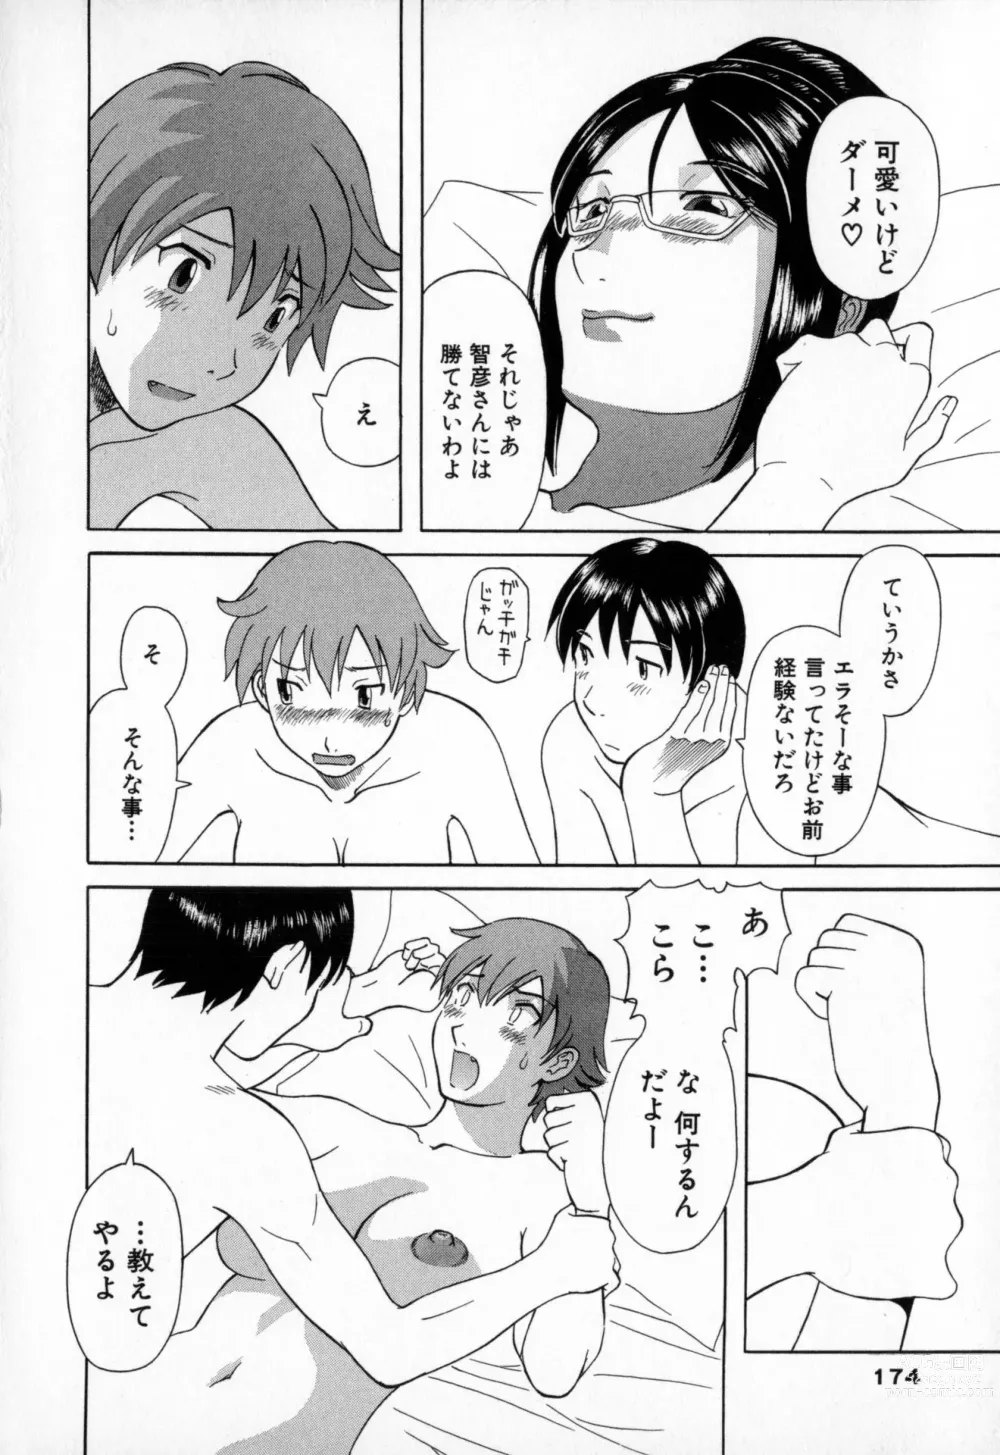 Page 174 of manga Gokuraku Ladies - Paradise Ladies Enjuku Hen